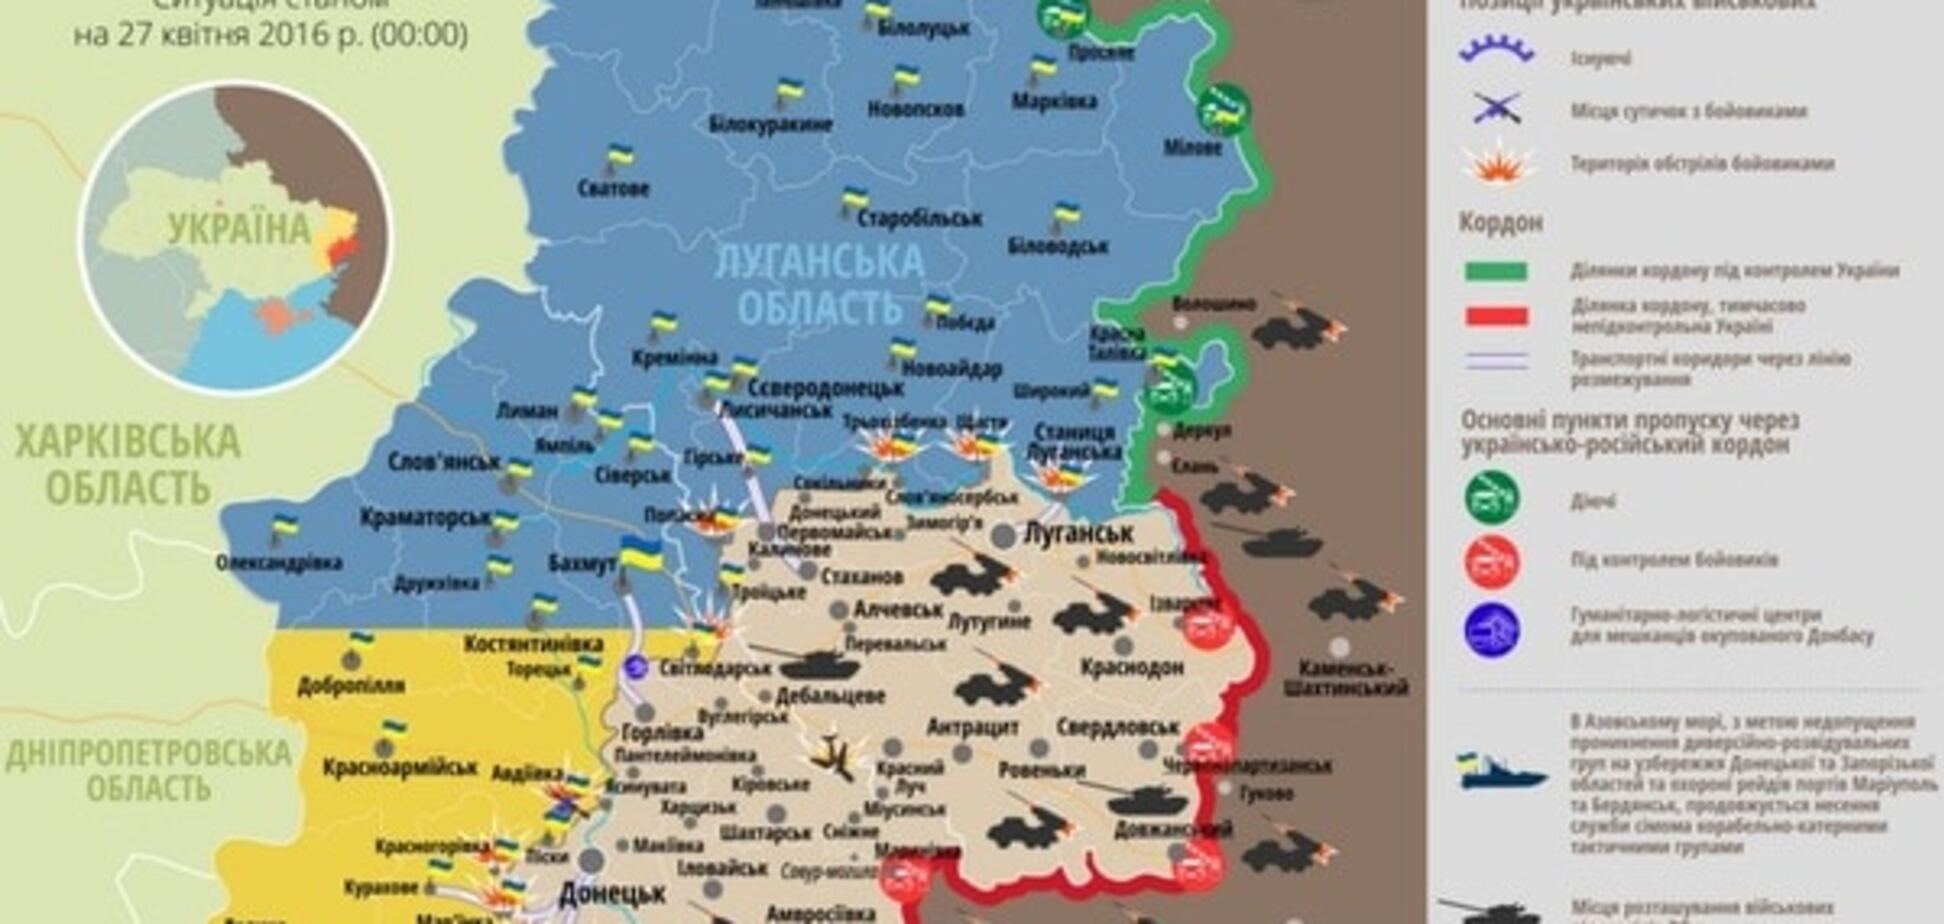 Украинские бойцы ранены на Донбассе: опубликована карта АТО